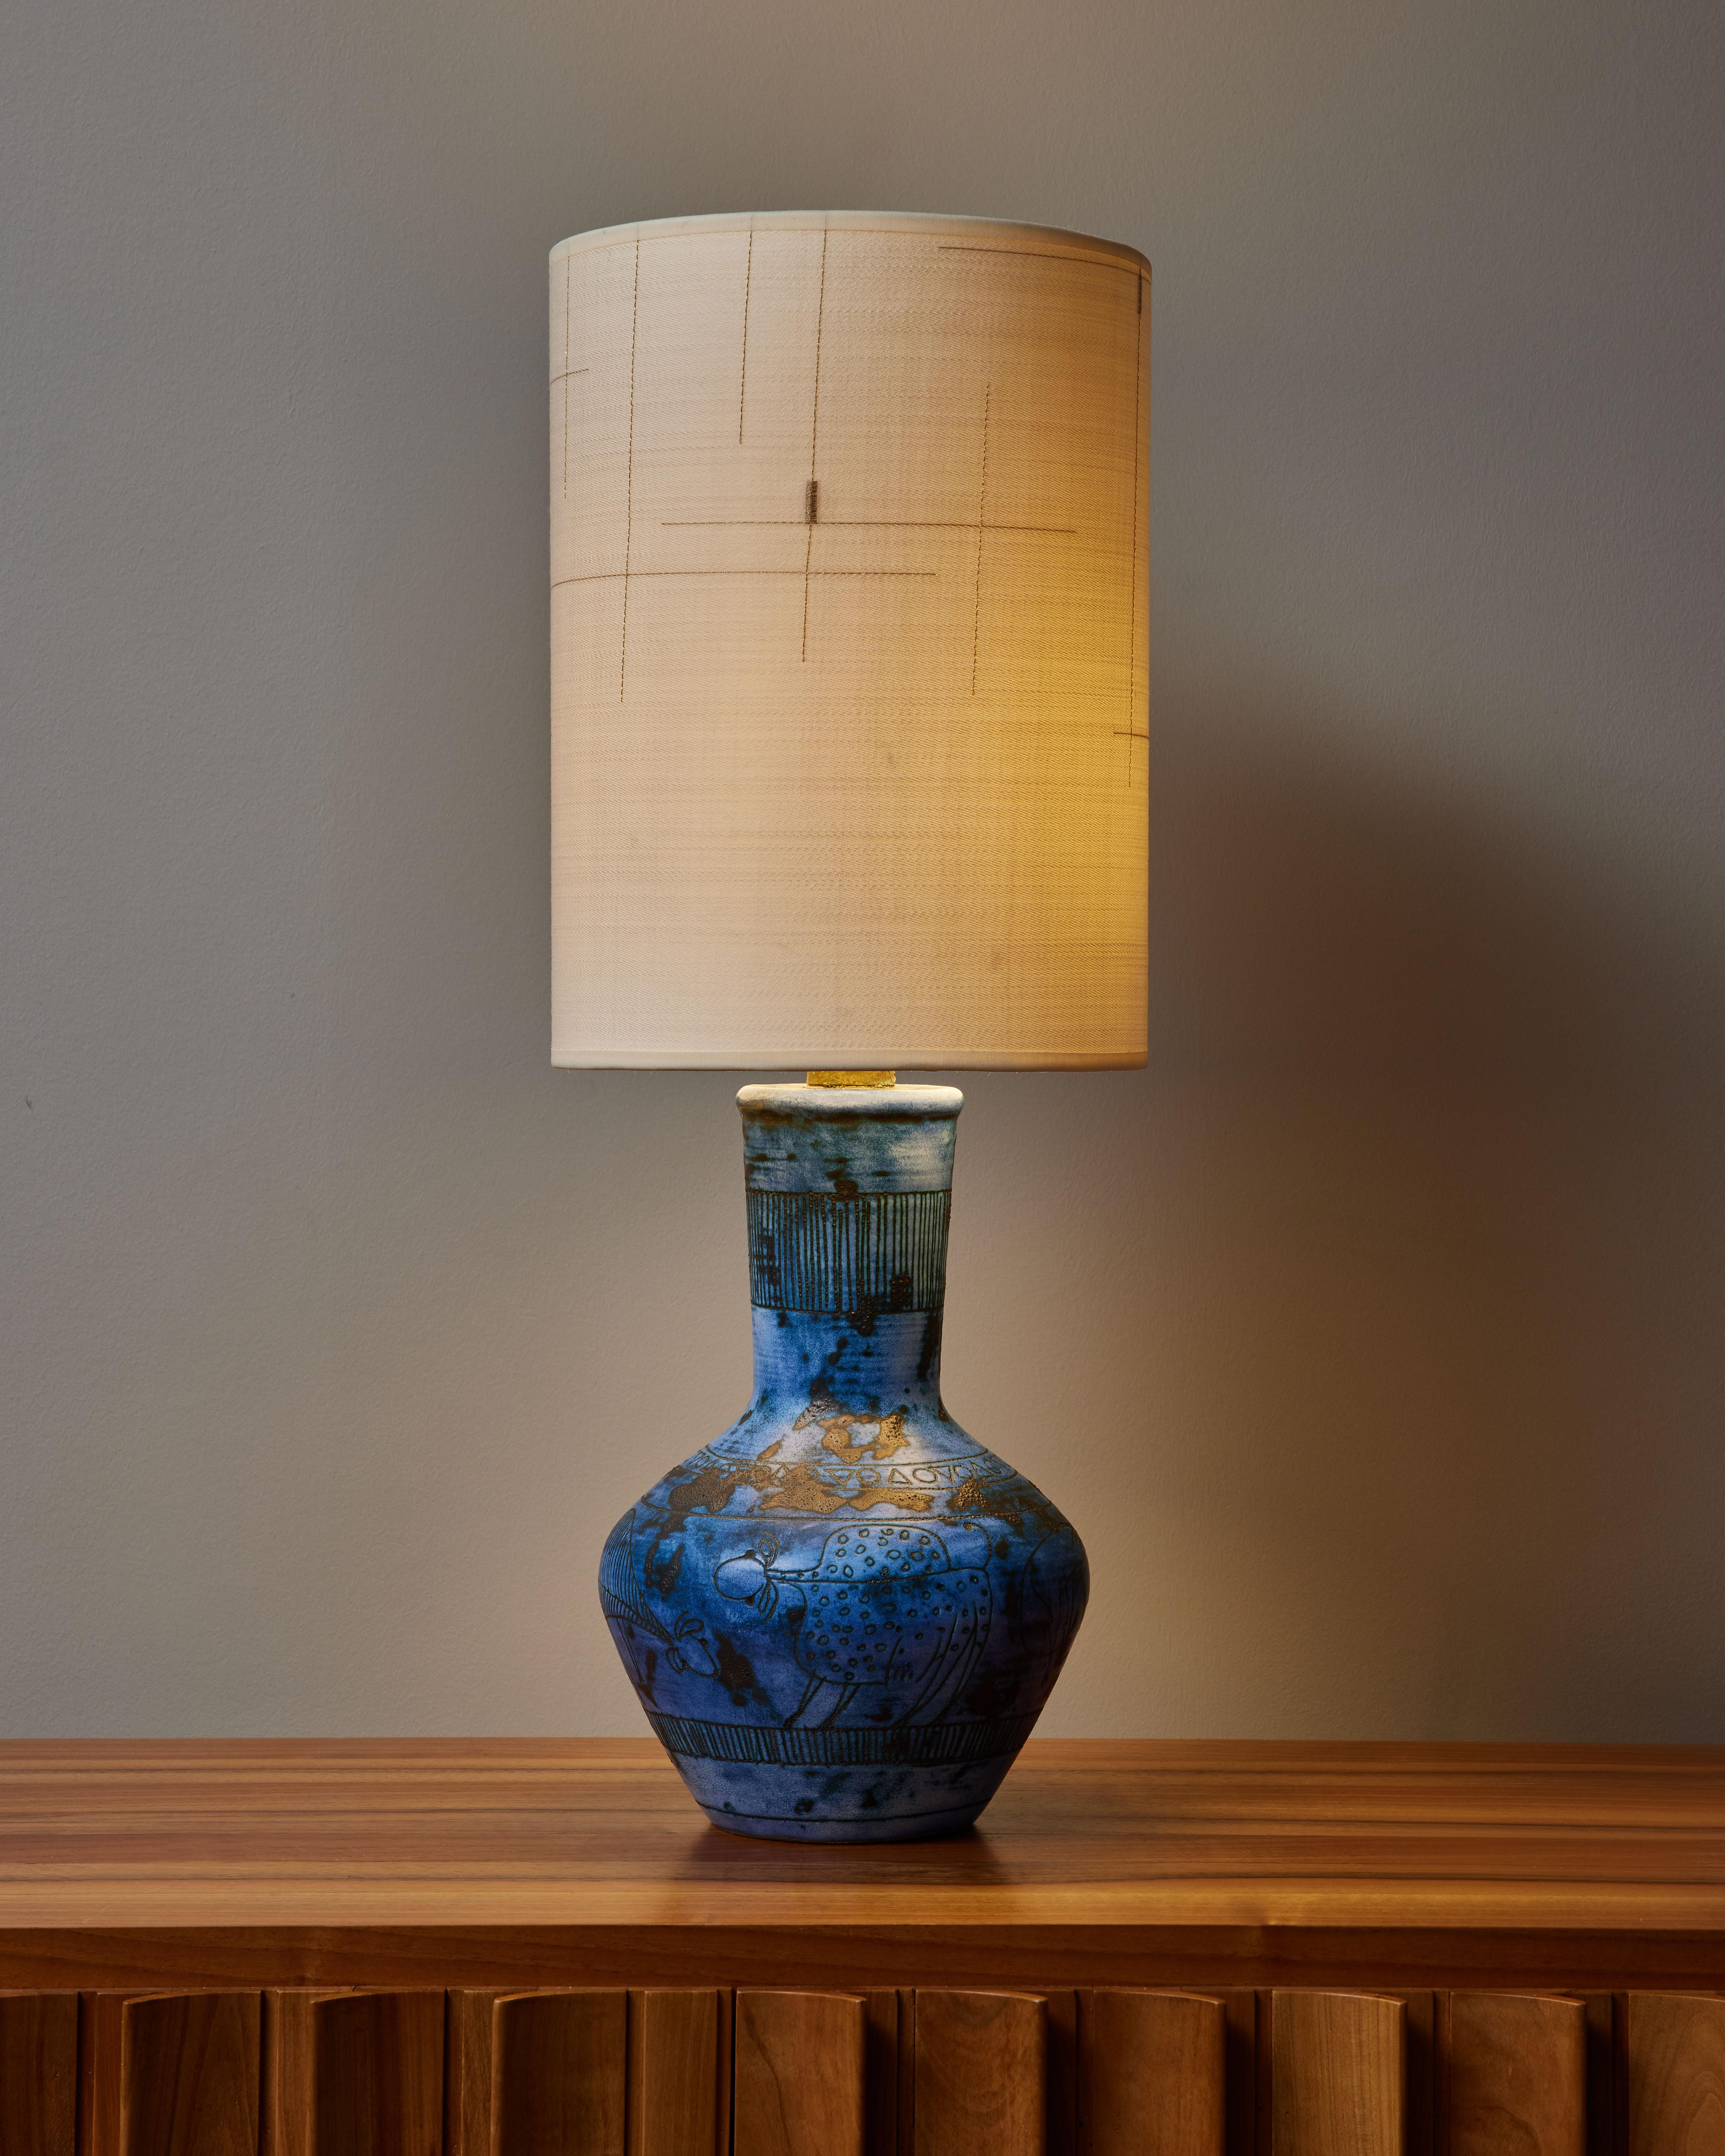 Lampe de table en céramique bleue de Jacques Blin, de forme balustre, avec des animaux stylisés gravés et des motifs géométriques. 
Signé en bas, nouvel abat-jour réalisé avec le tissu DEDAR.

Jacques Blin (1920-1995) Jacques Blin est un célèbre